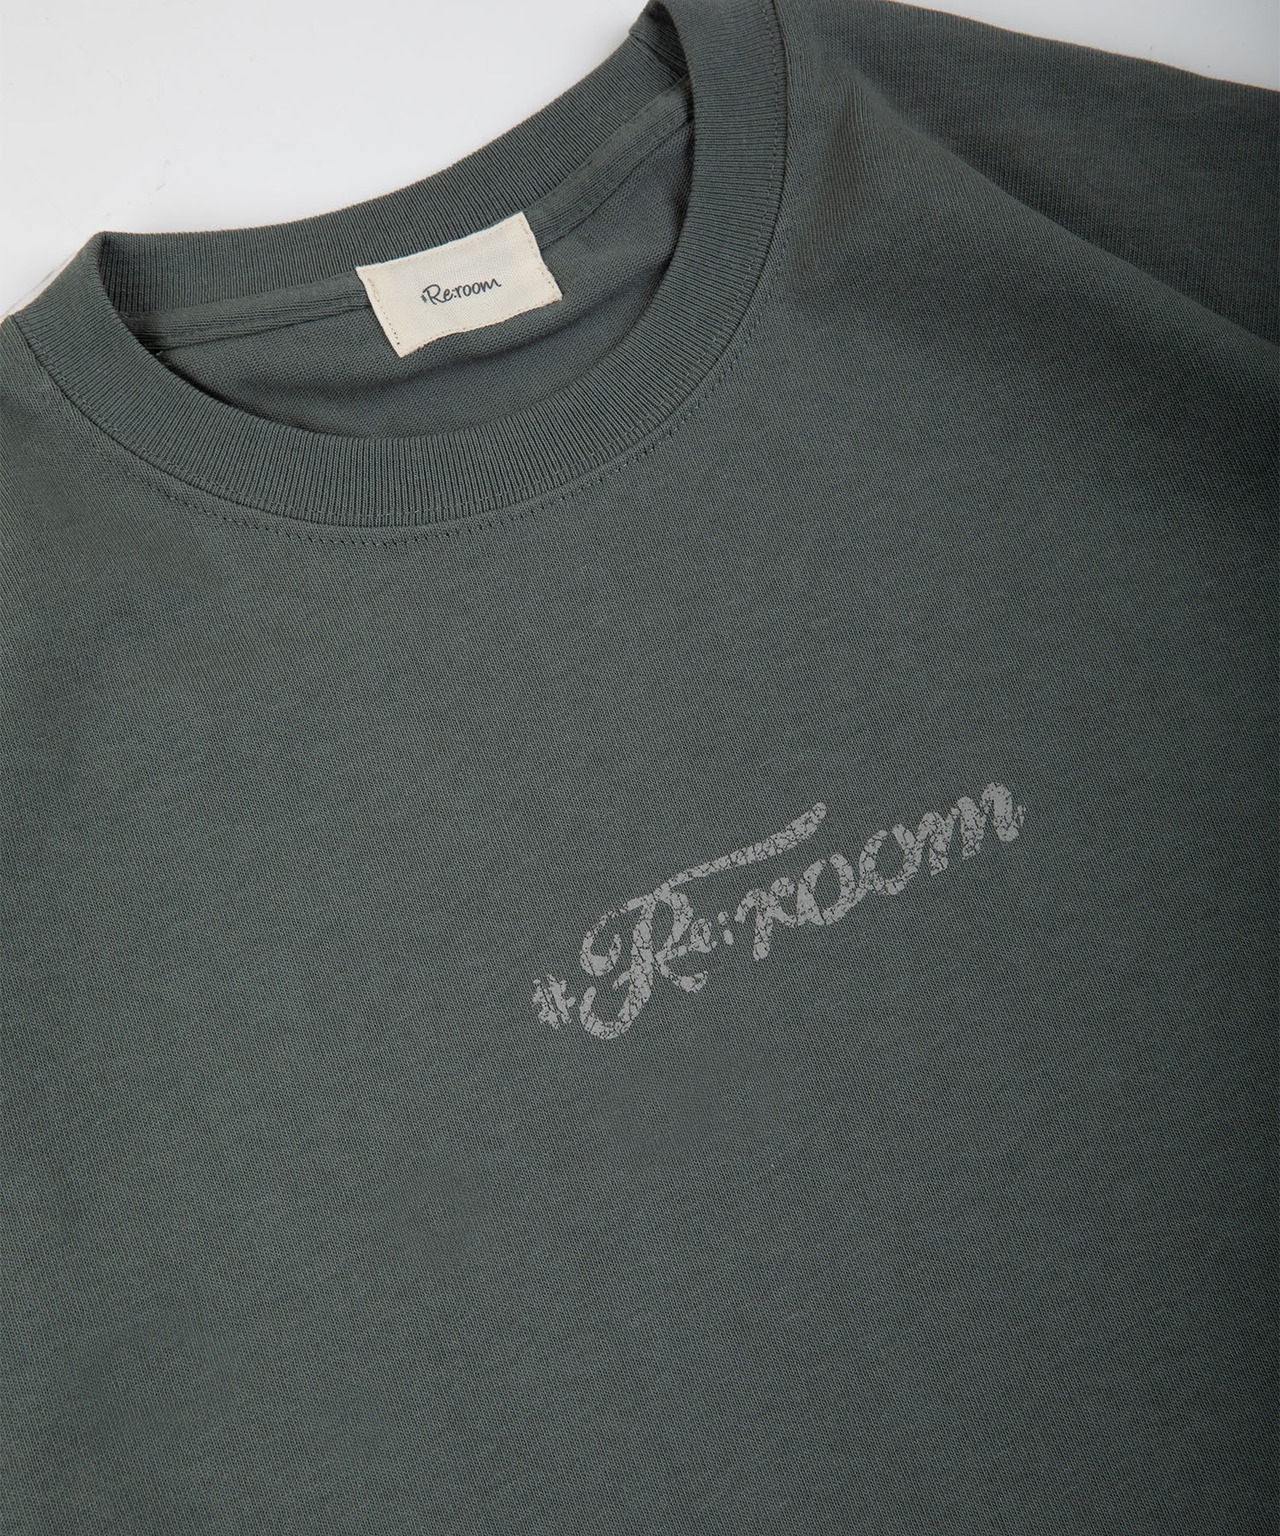 【#Re:room】#Re:room PEANUTS LOGO BIG T-shirts［REC691］